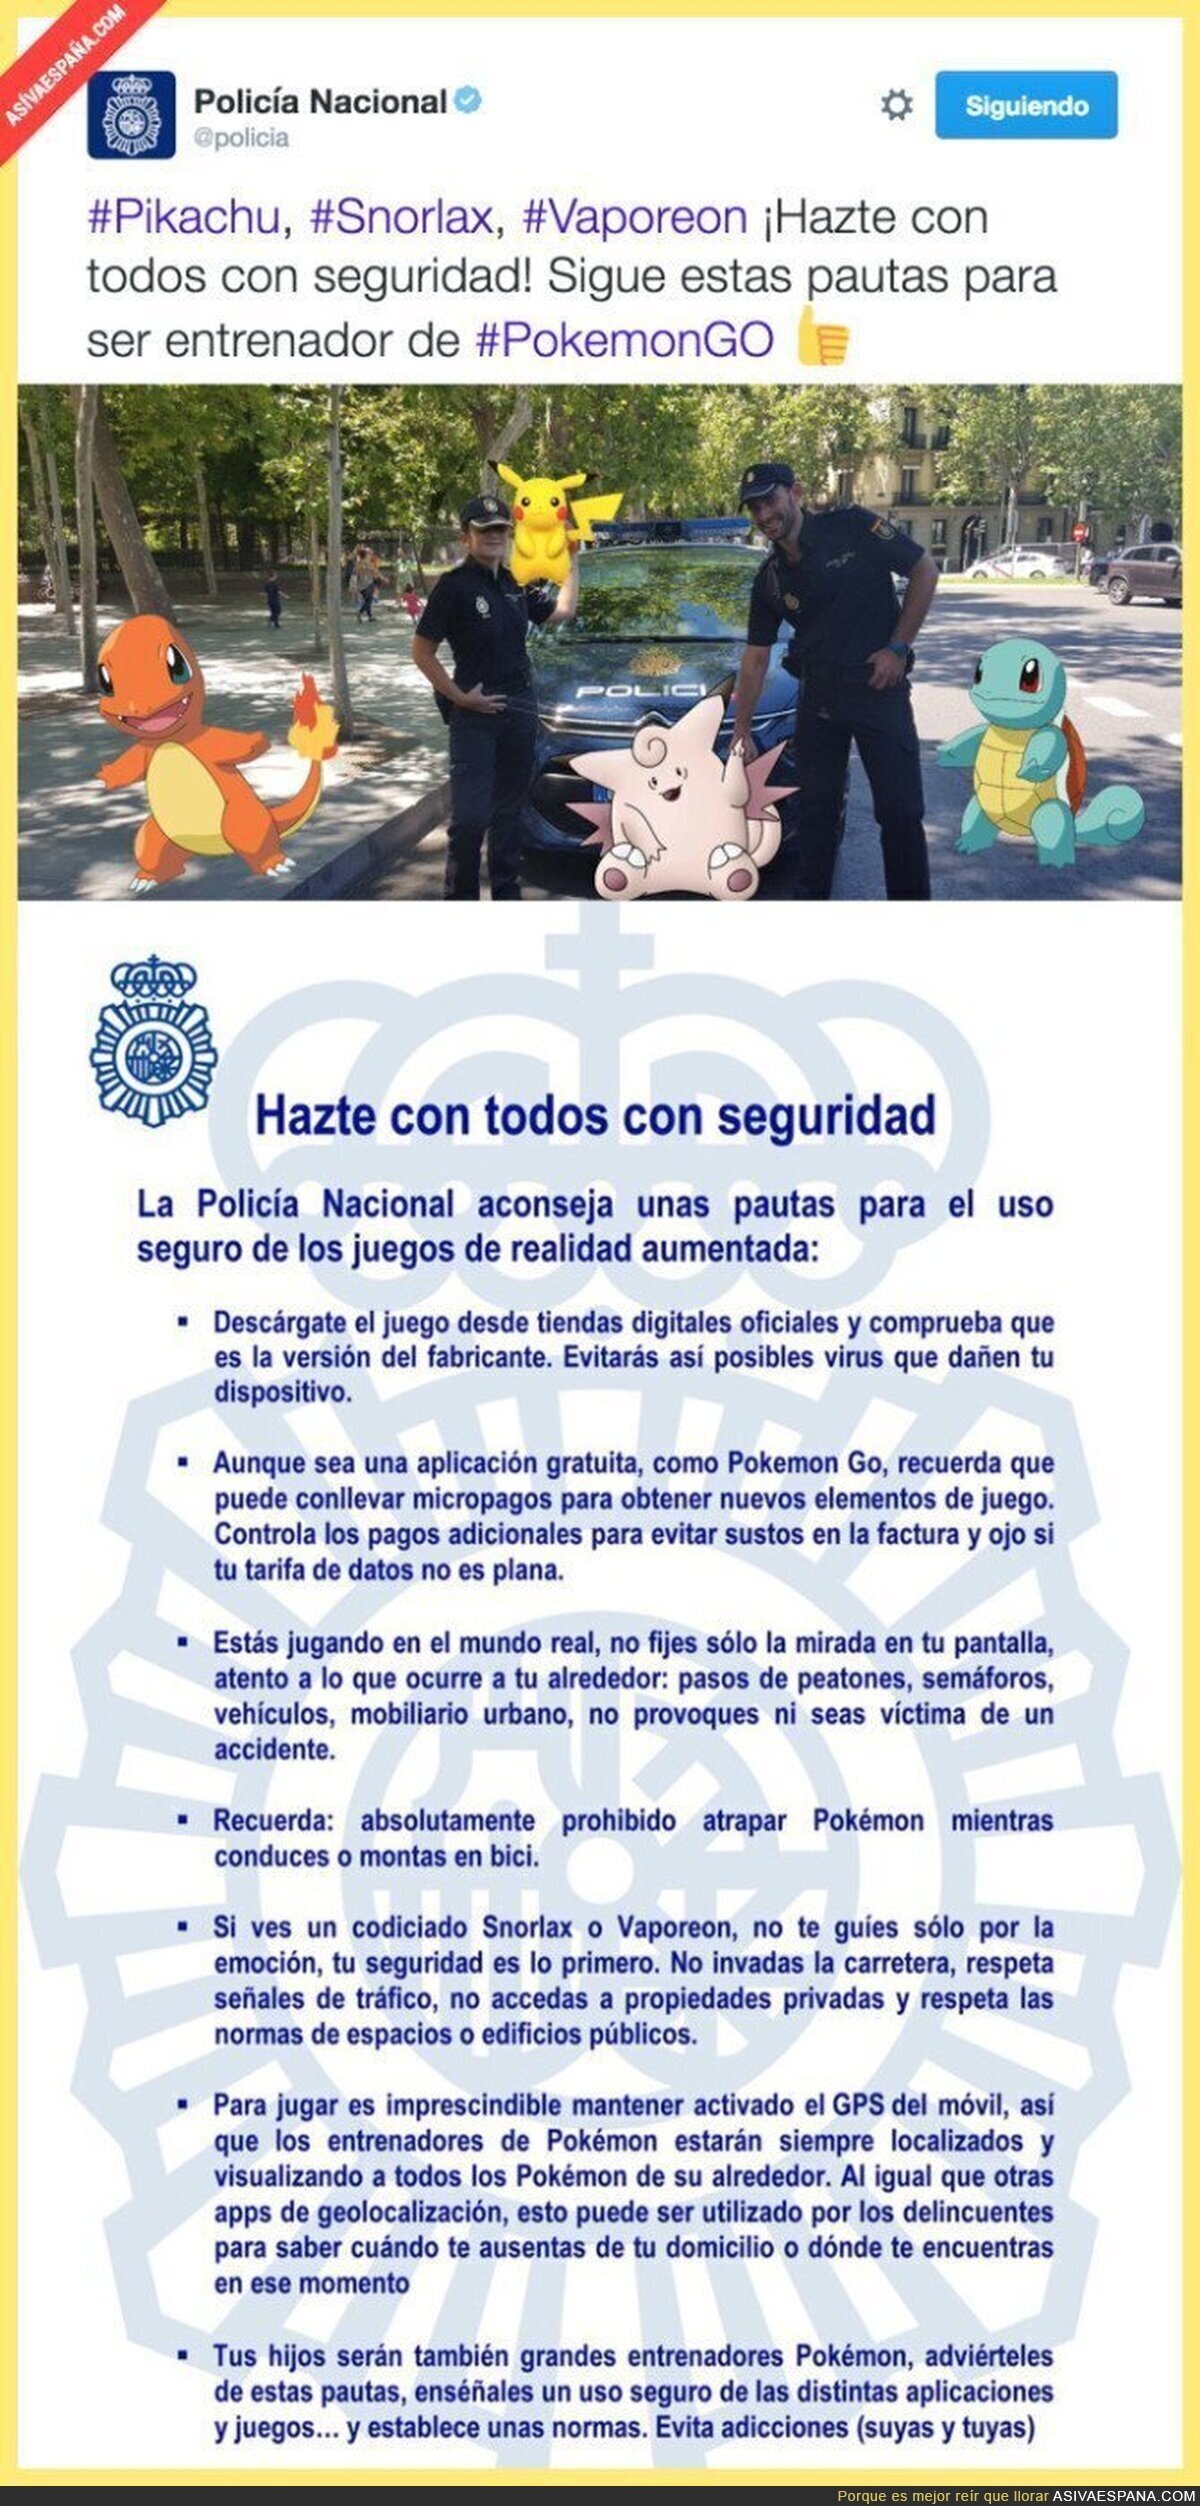 Los consejos que da la Policía para ser un Maestro en Pokémon Go con total seguridad en las calles